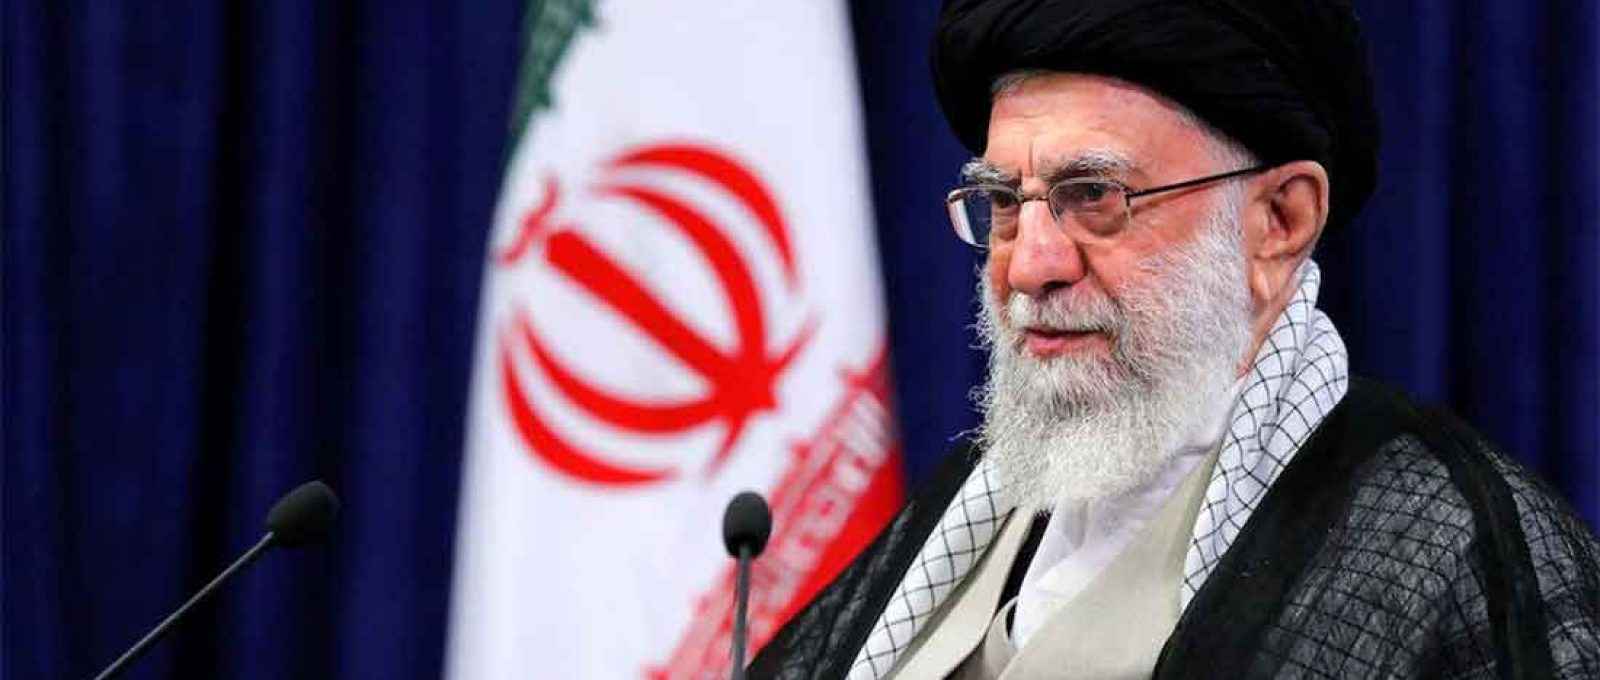 O líder supremo do Irã, aiatolá Ali Khamenei, fez um discurso televisionado no Irã, em 4 de junho de 2021 (Site oficial de Khamenei/via Reuters).